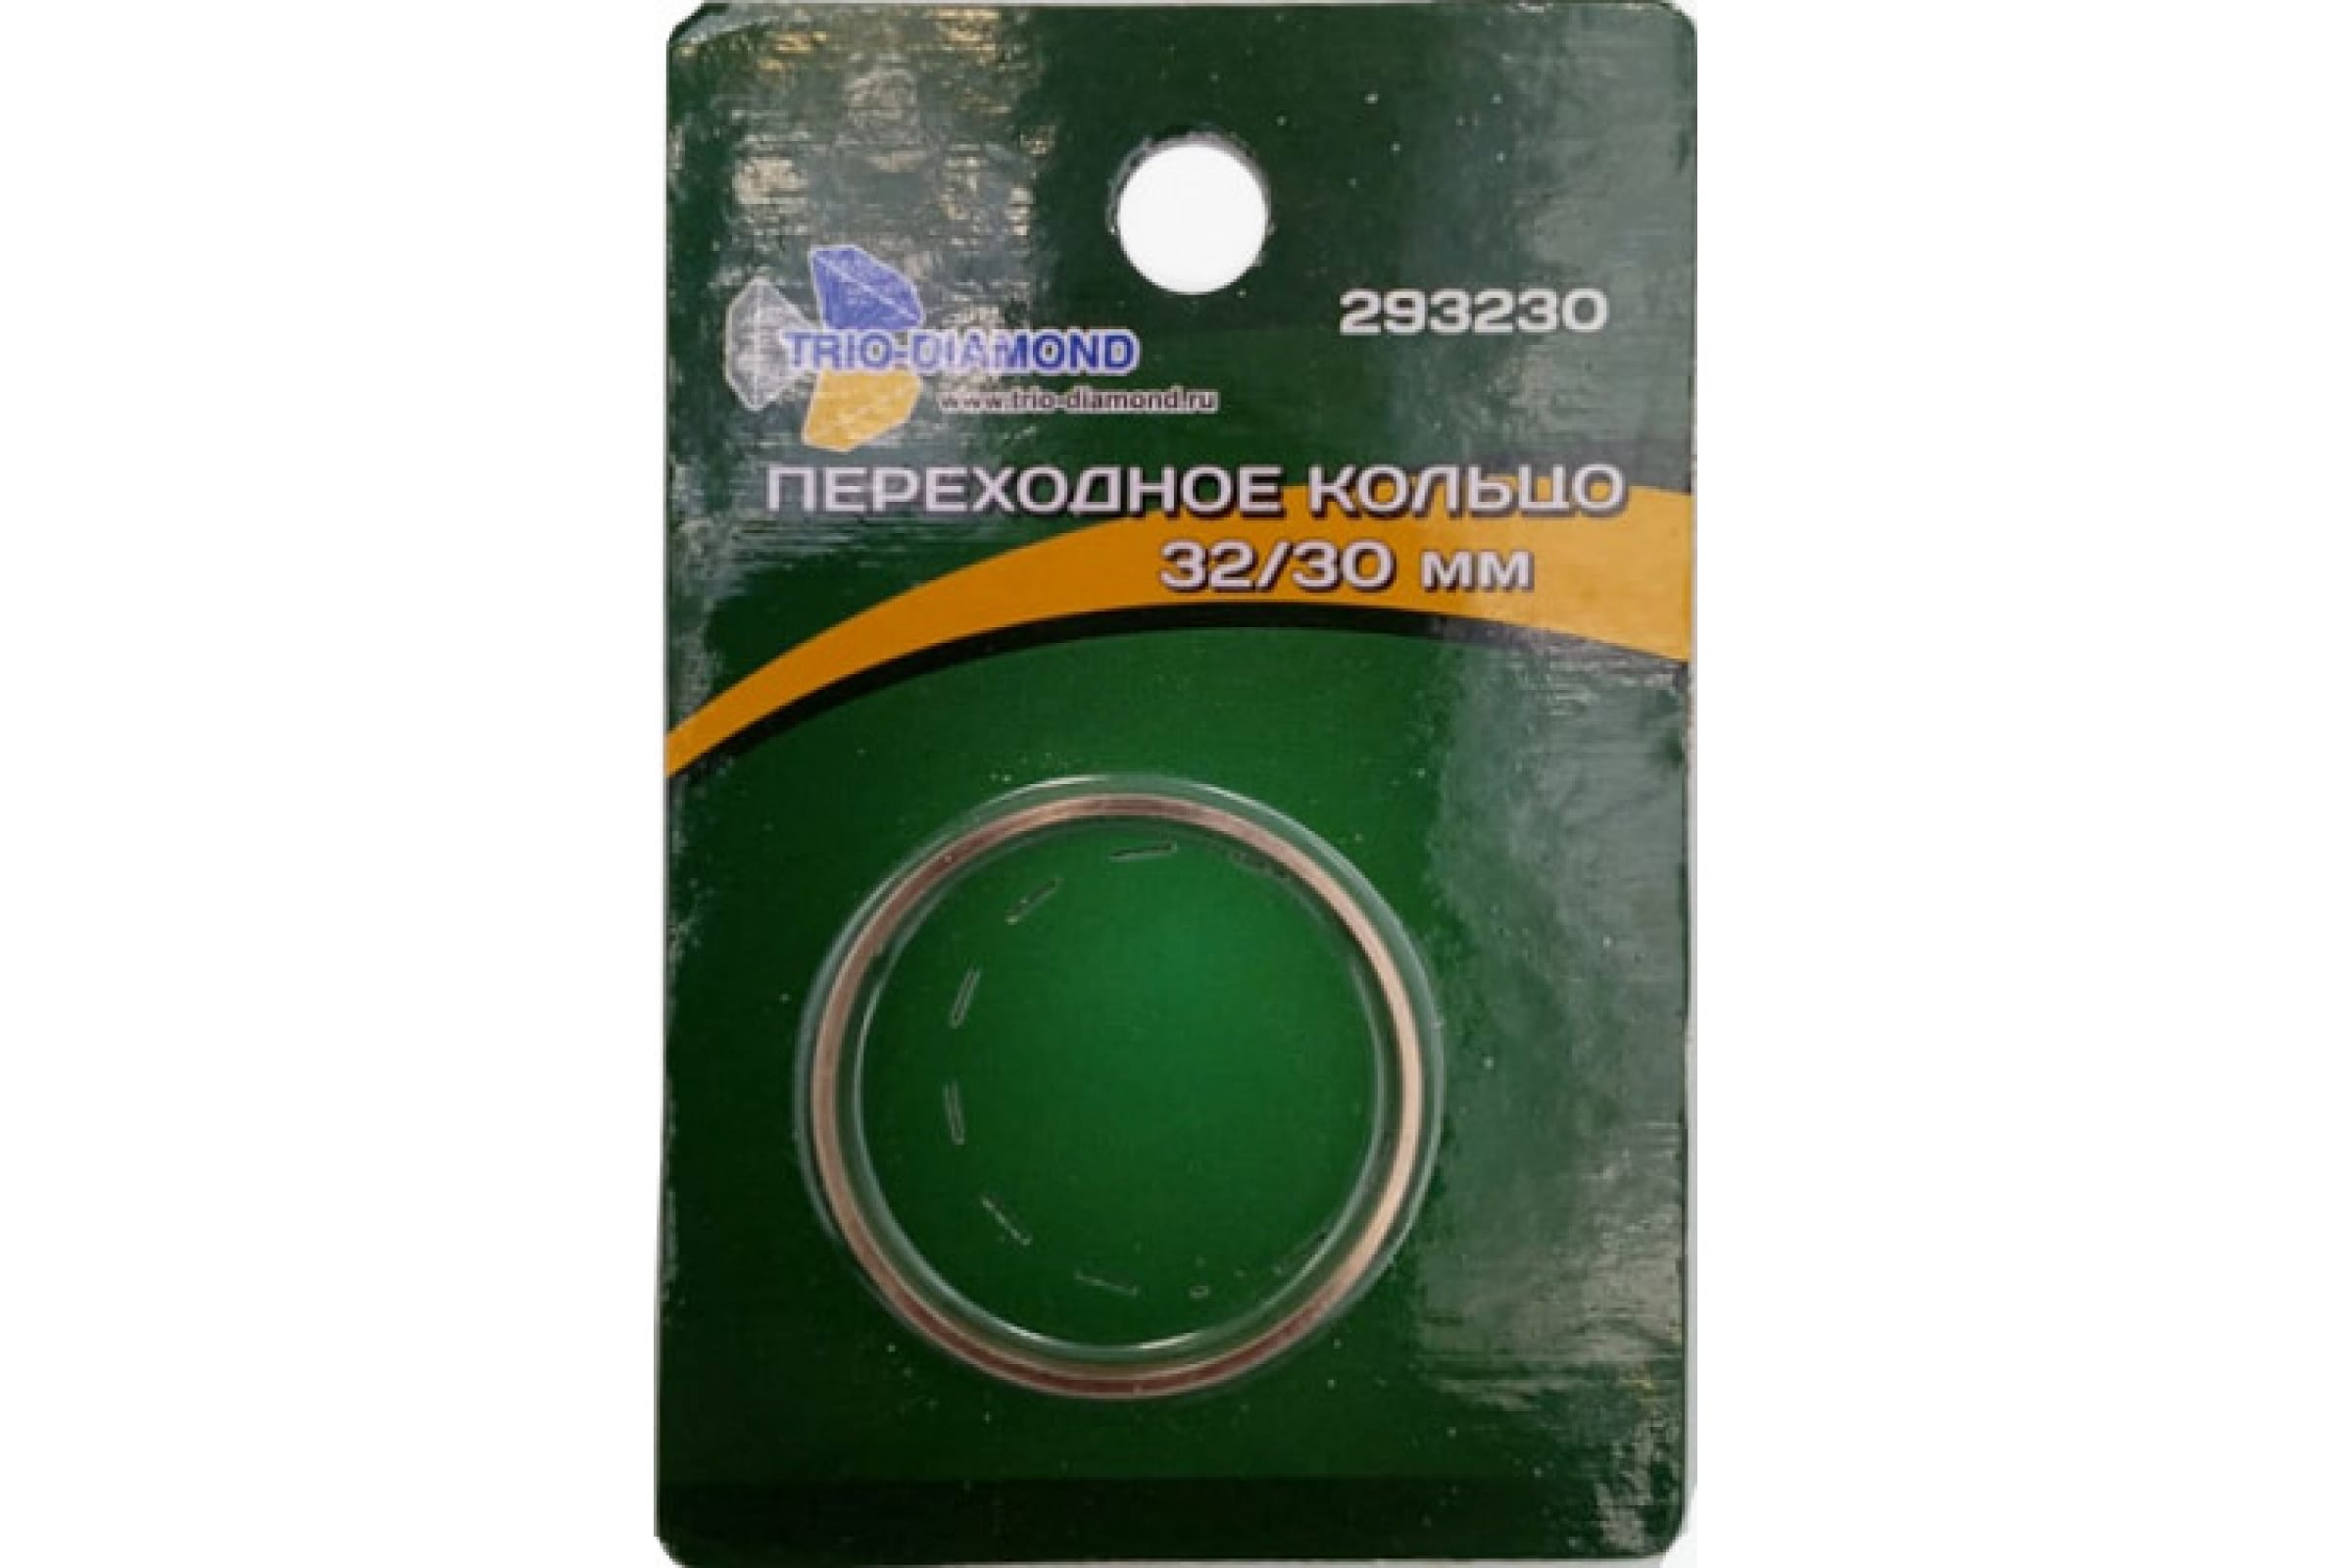 TRIO-DIAMOND Кольцо переходное 32/30 293230 переходное кольцо для бензорезчиков stihl monogram